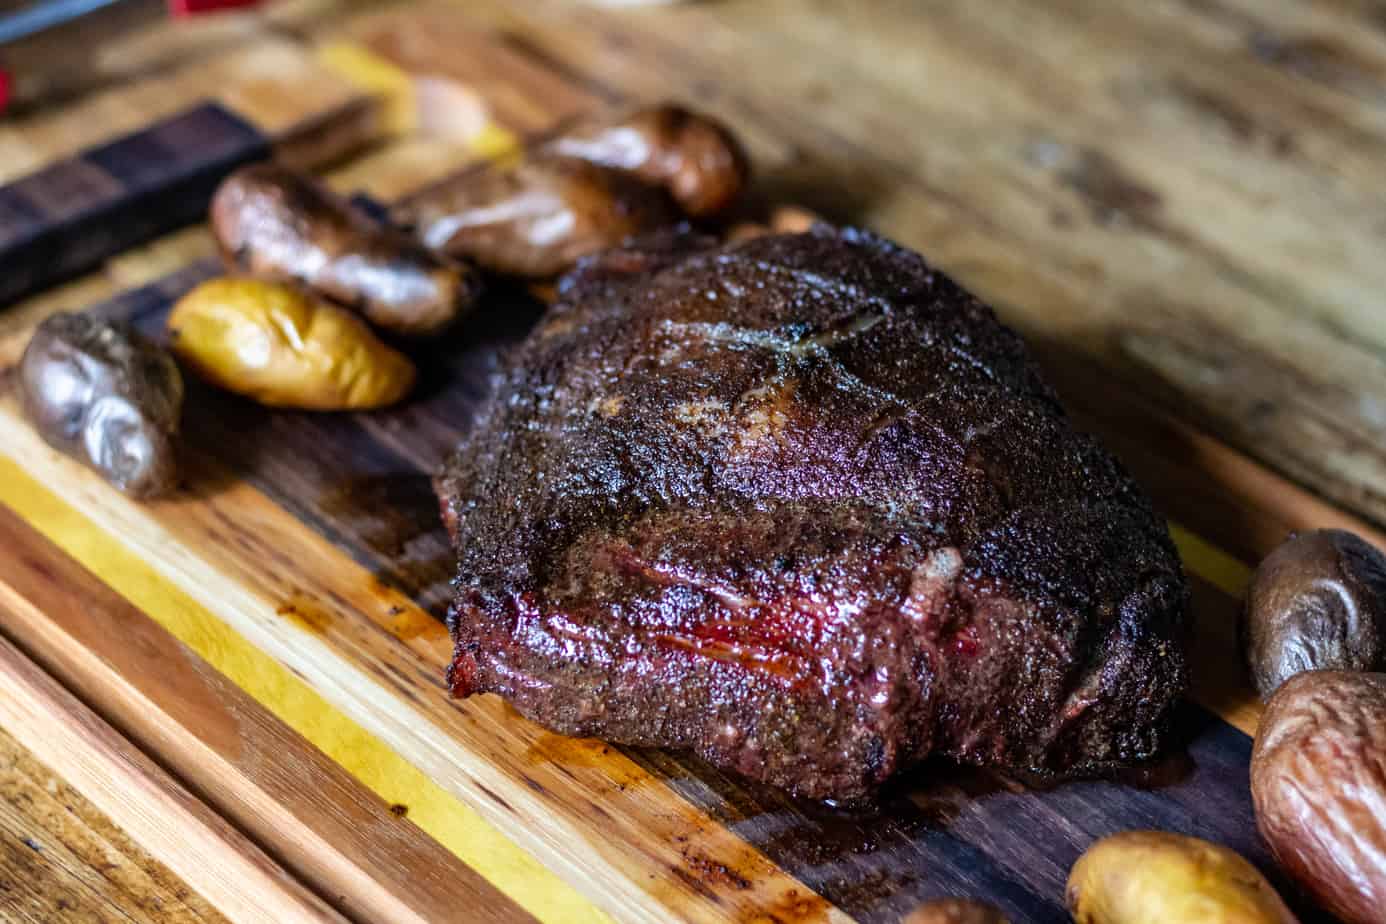 https://www.smokedmeatsunday.com/wp-content/uploads/2019/08/Smoked-Picanha-Steak-2.jpg